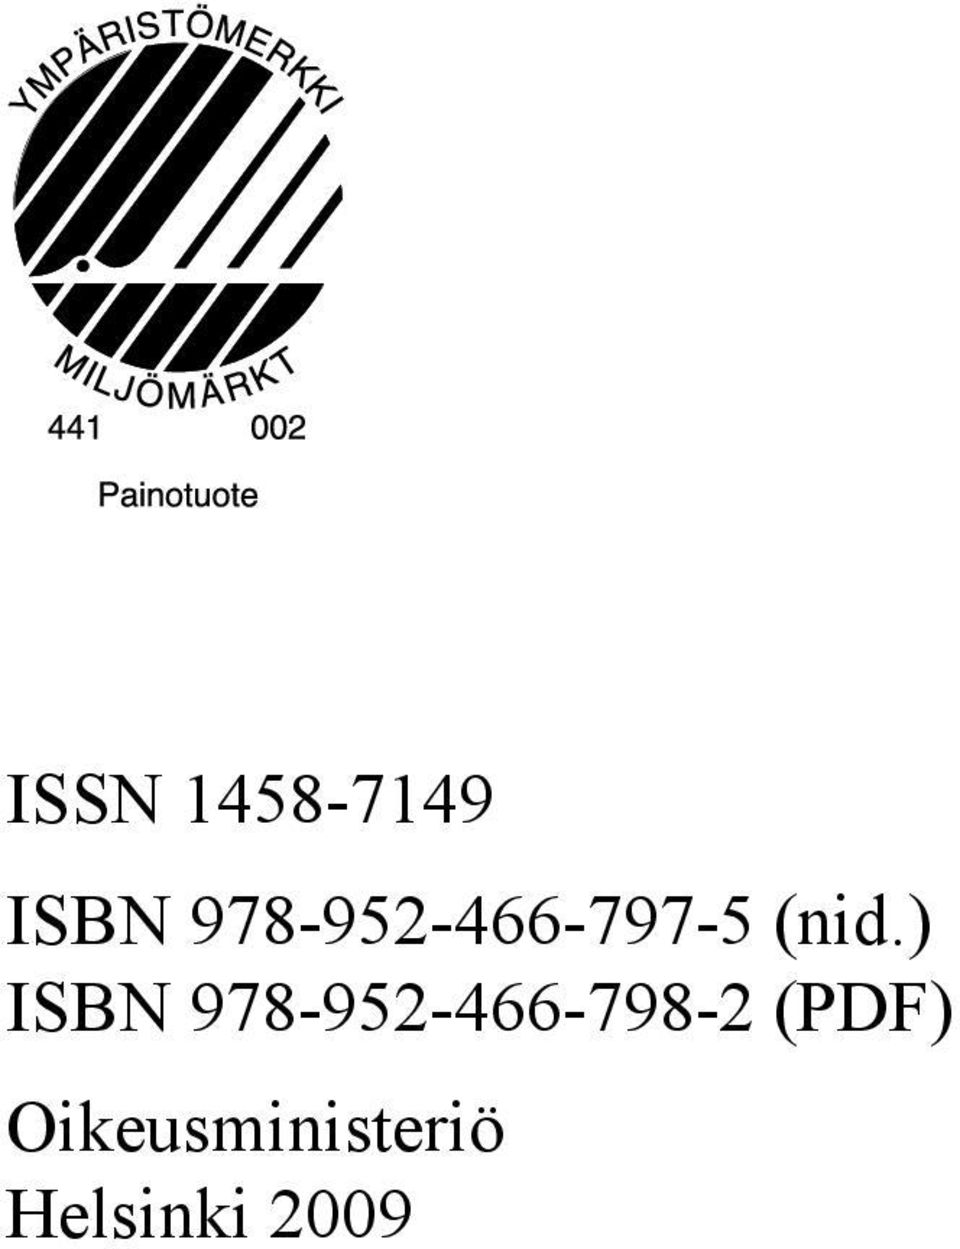 ) ISBN 978-952-466-798-2